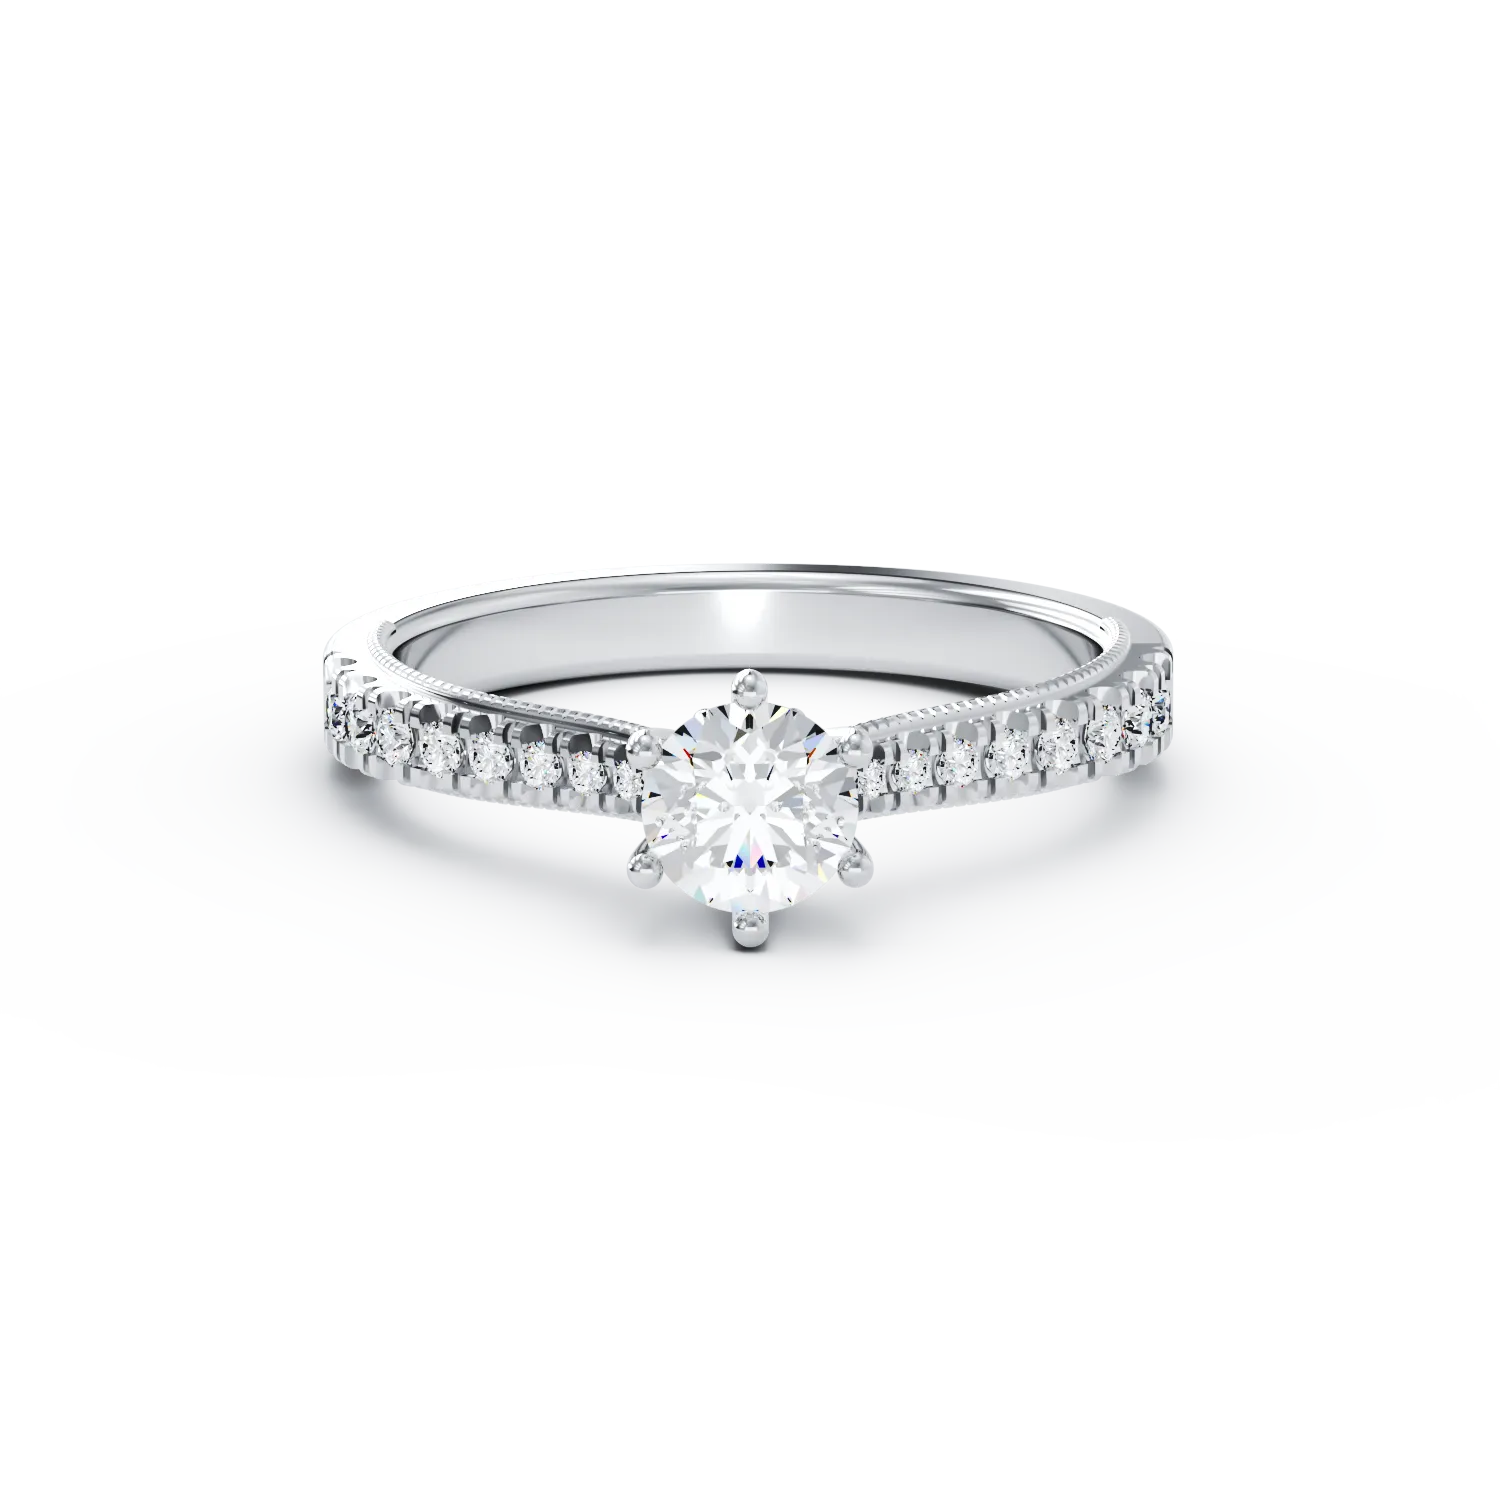 Eljegyzési gyűrű 18K-os fehér aranyból 0,24ct gyémánttal és 0,18ct gyémánttal. Gramm: 2,51